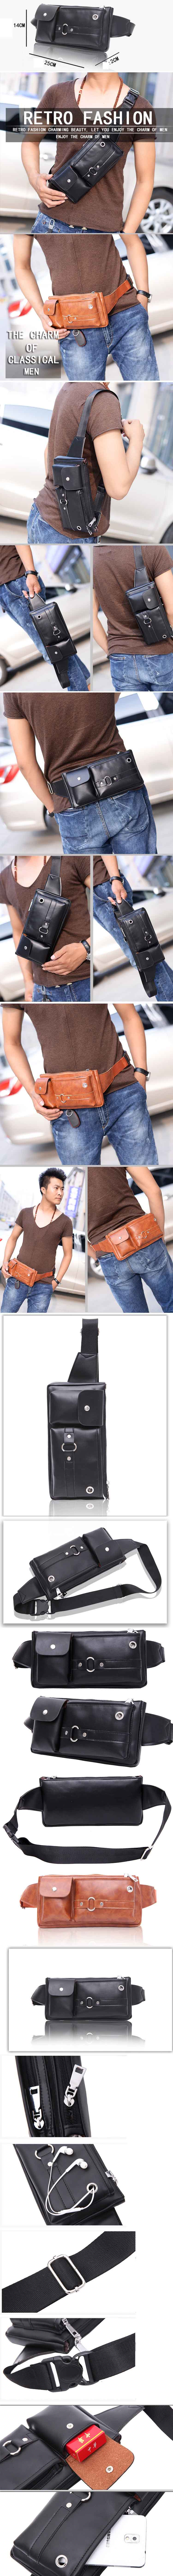 jual tas pinggang pria model vintage keren dari bahan kulit sintetis berkualitas, klik dan pesan online tas pinggang pria keren hanya di pfp store